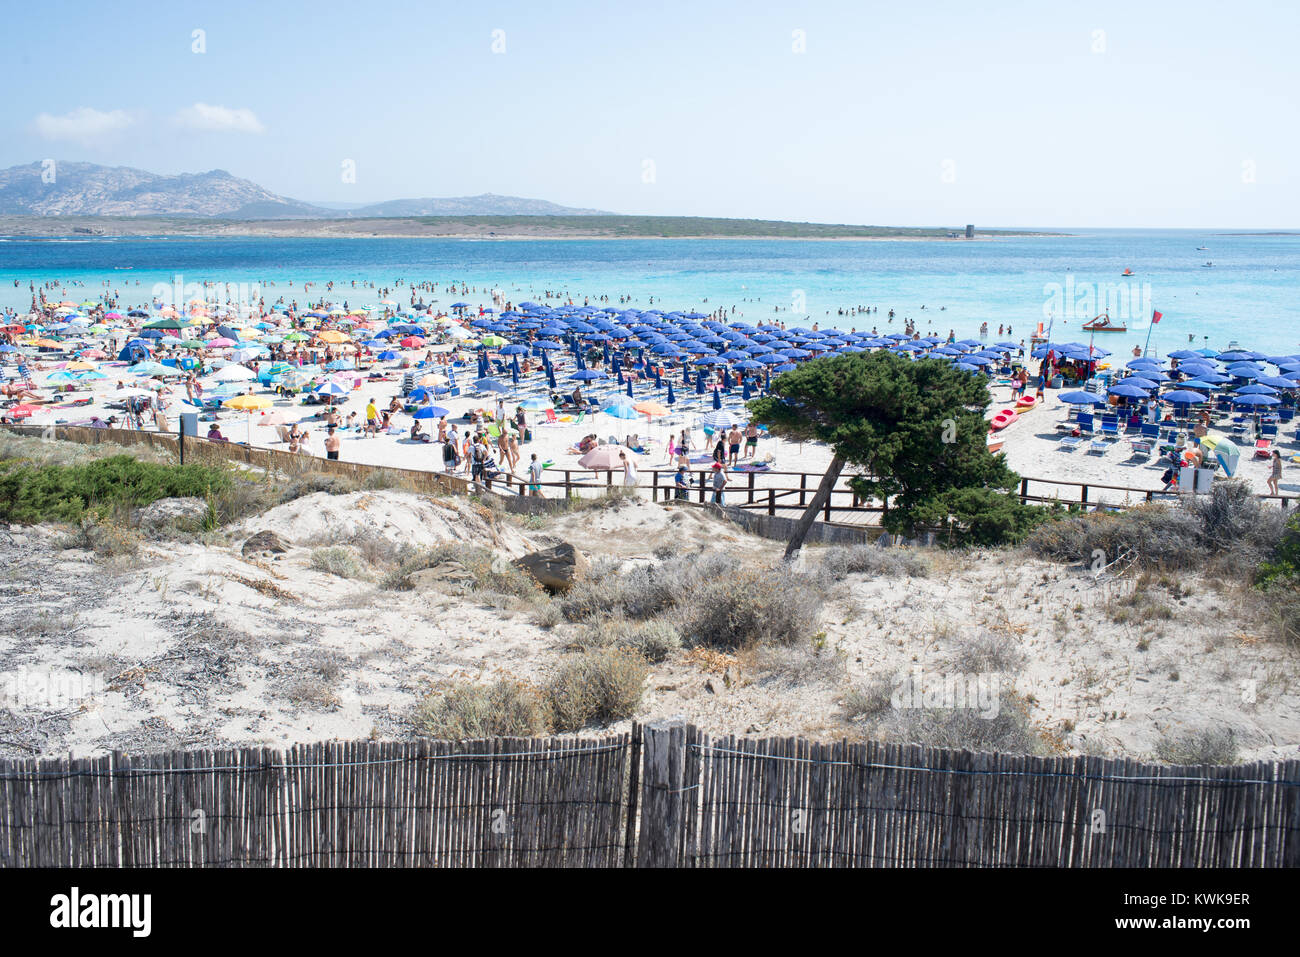 Vista panoramica della spiaggia della Pelosa a Stintino in Sardegna in piena stagione turistica. Centinaia di turisti che affollano la bella ma piccola spiaggia Foto Stock